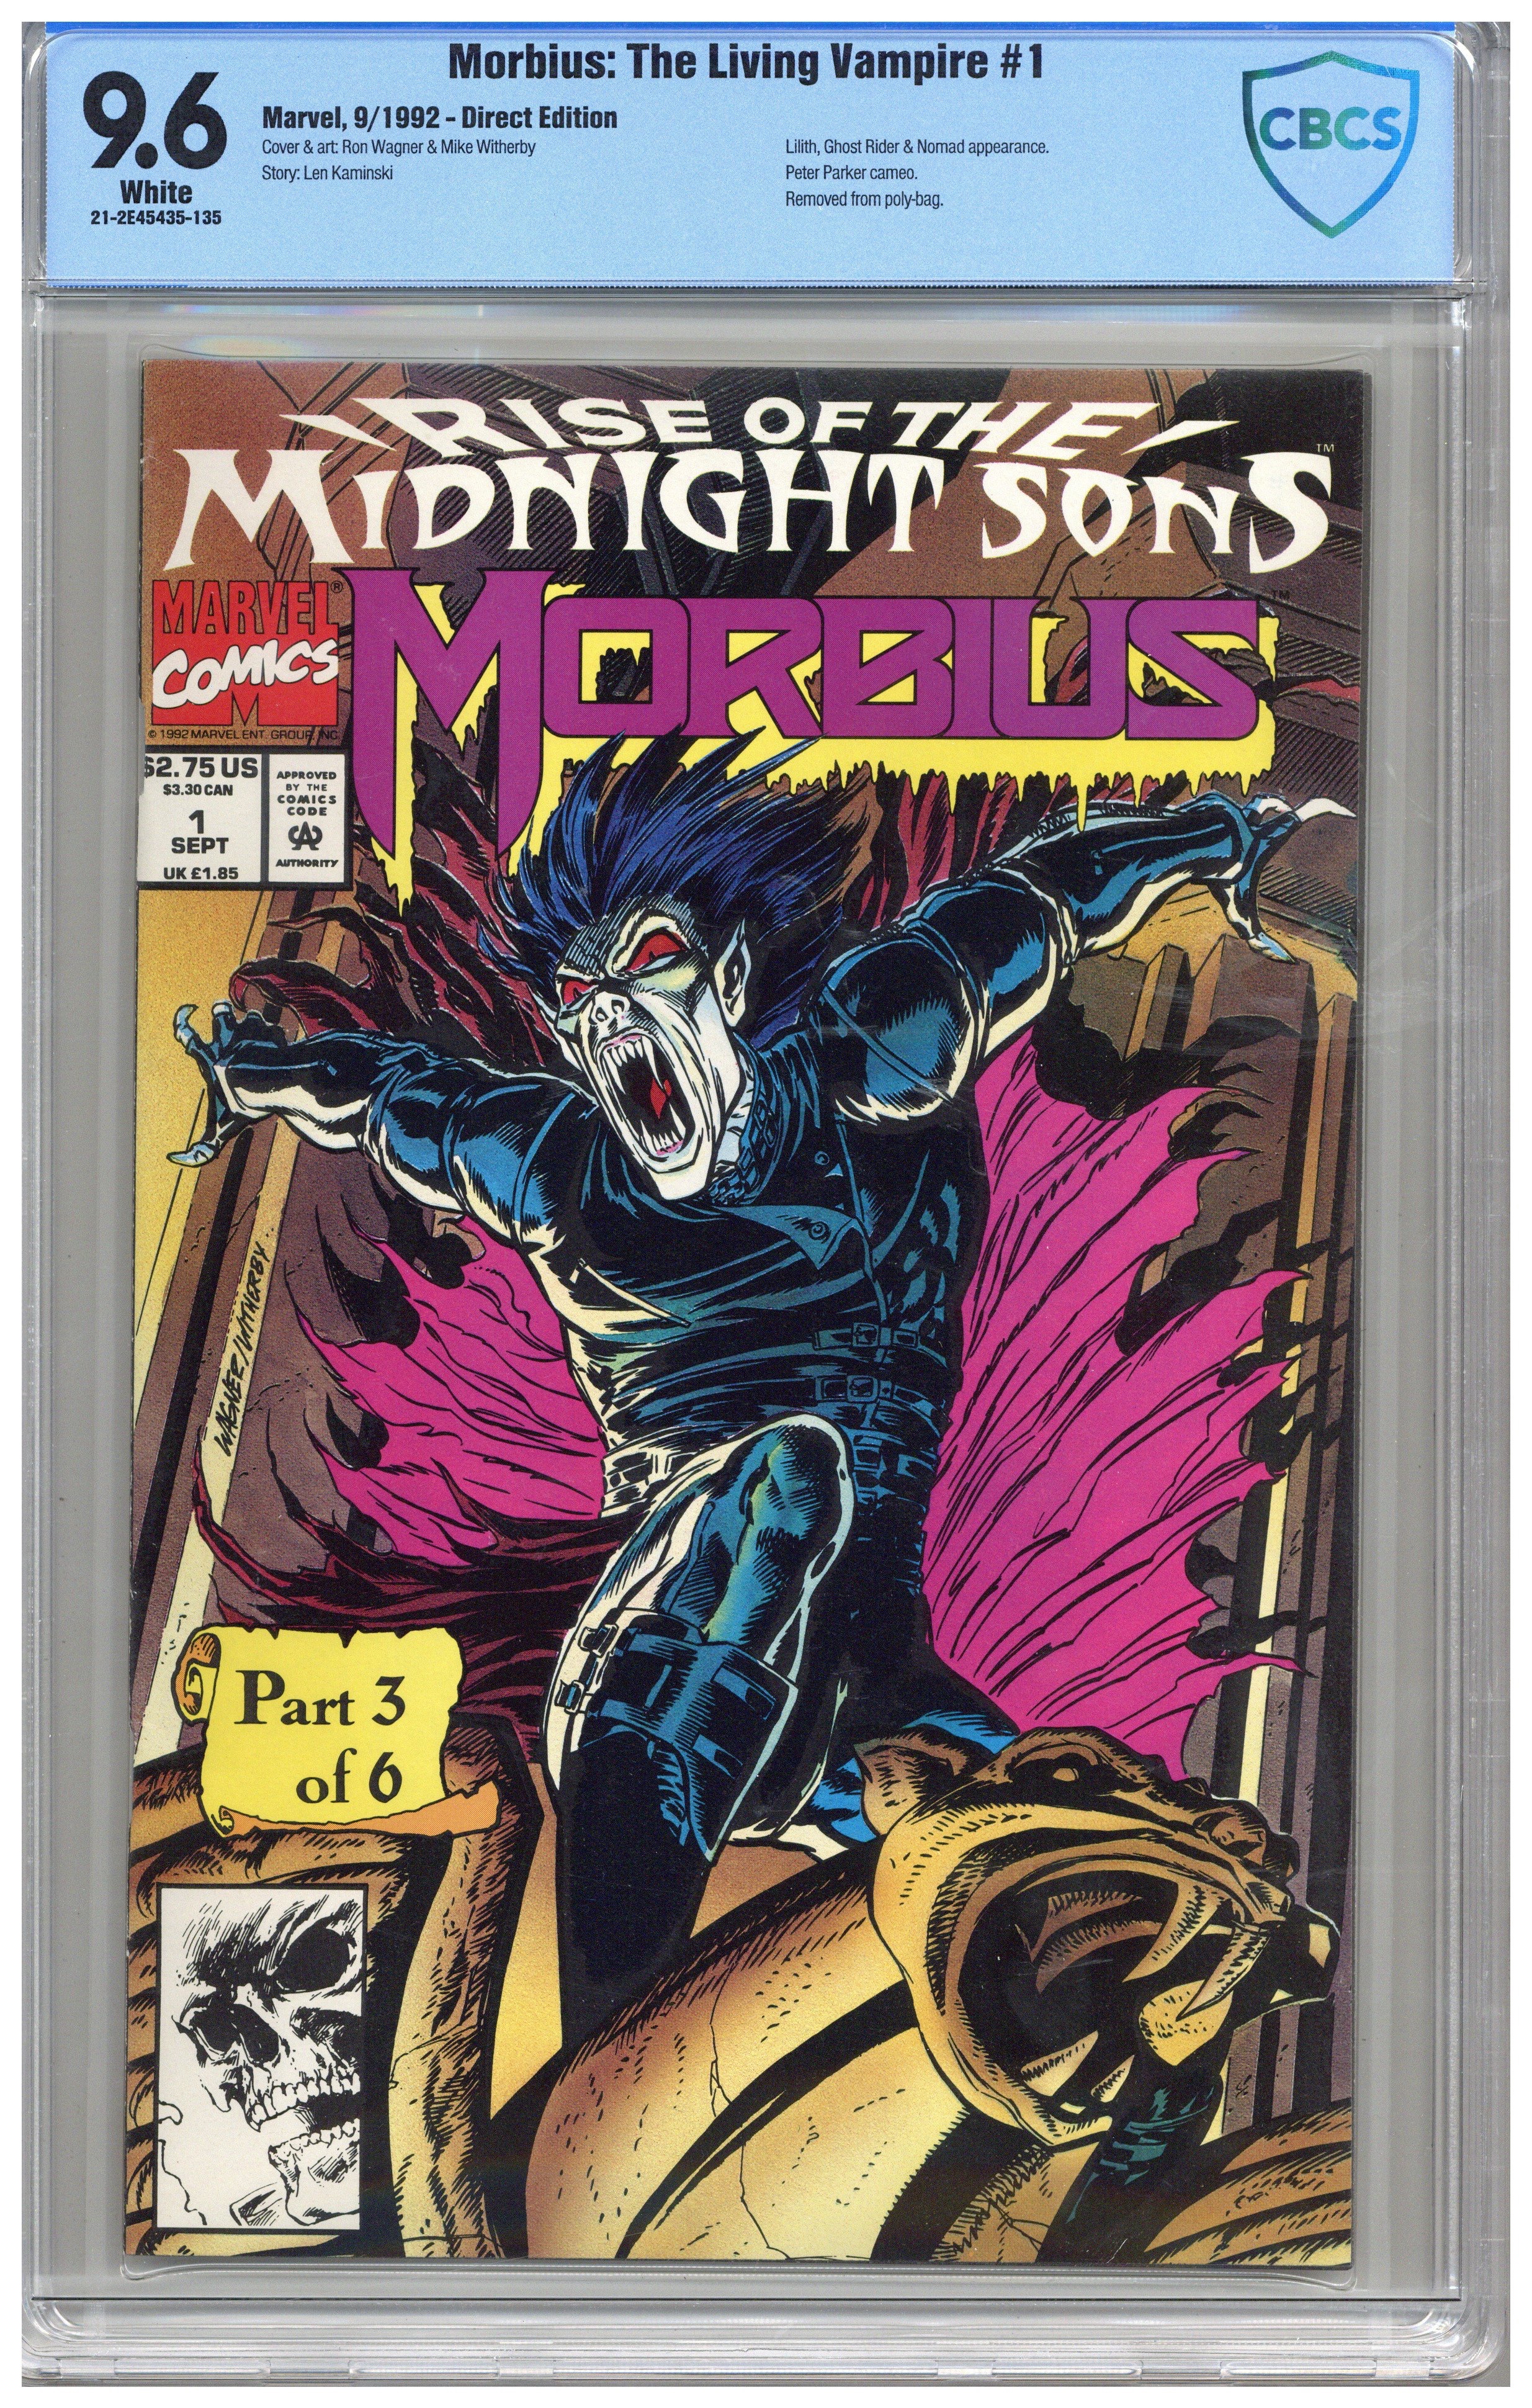 Morbius: The Living Vampire / Issue #1 | Comics Details | Four